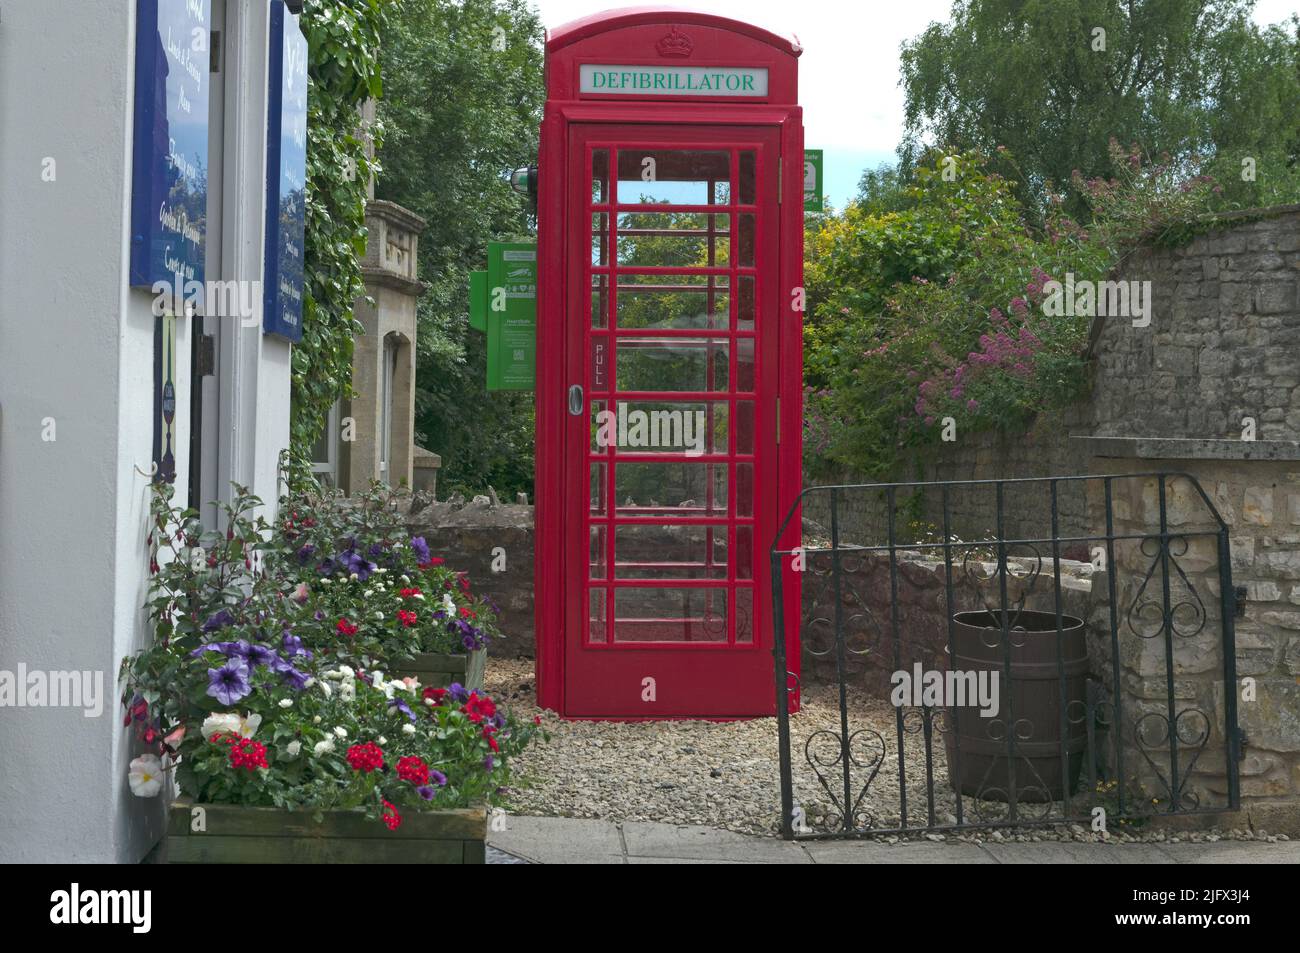 Defibrilator in una cabina telefonica rossa riadattata fuori dalla casa pubblica Bird in Hand, Saltford vicino Bristol, giugno 2022 Foto Stock